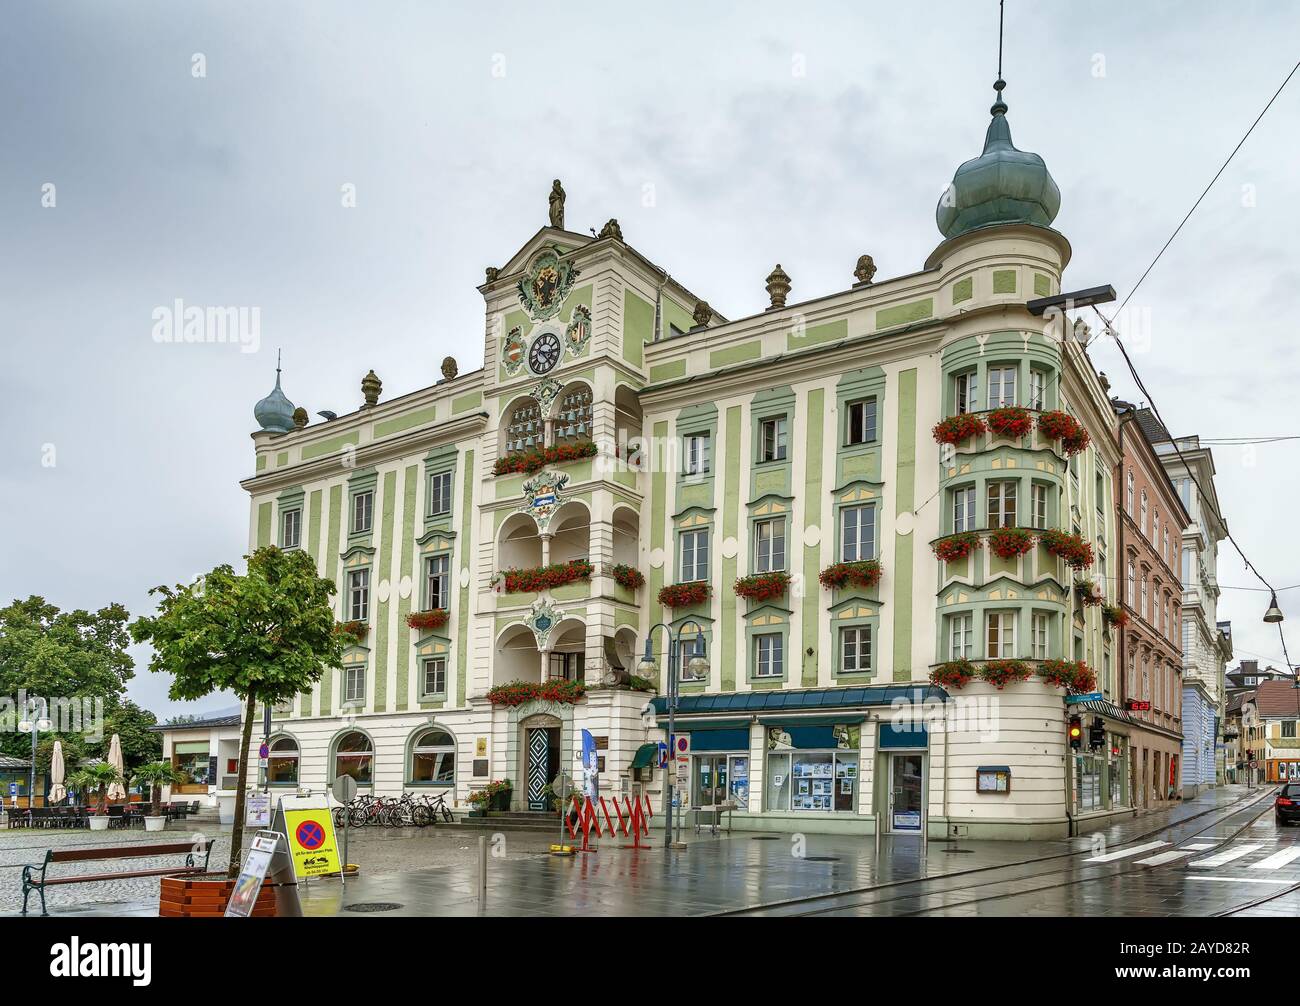 Town hall of Gmunden, Austria Stock Photo